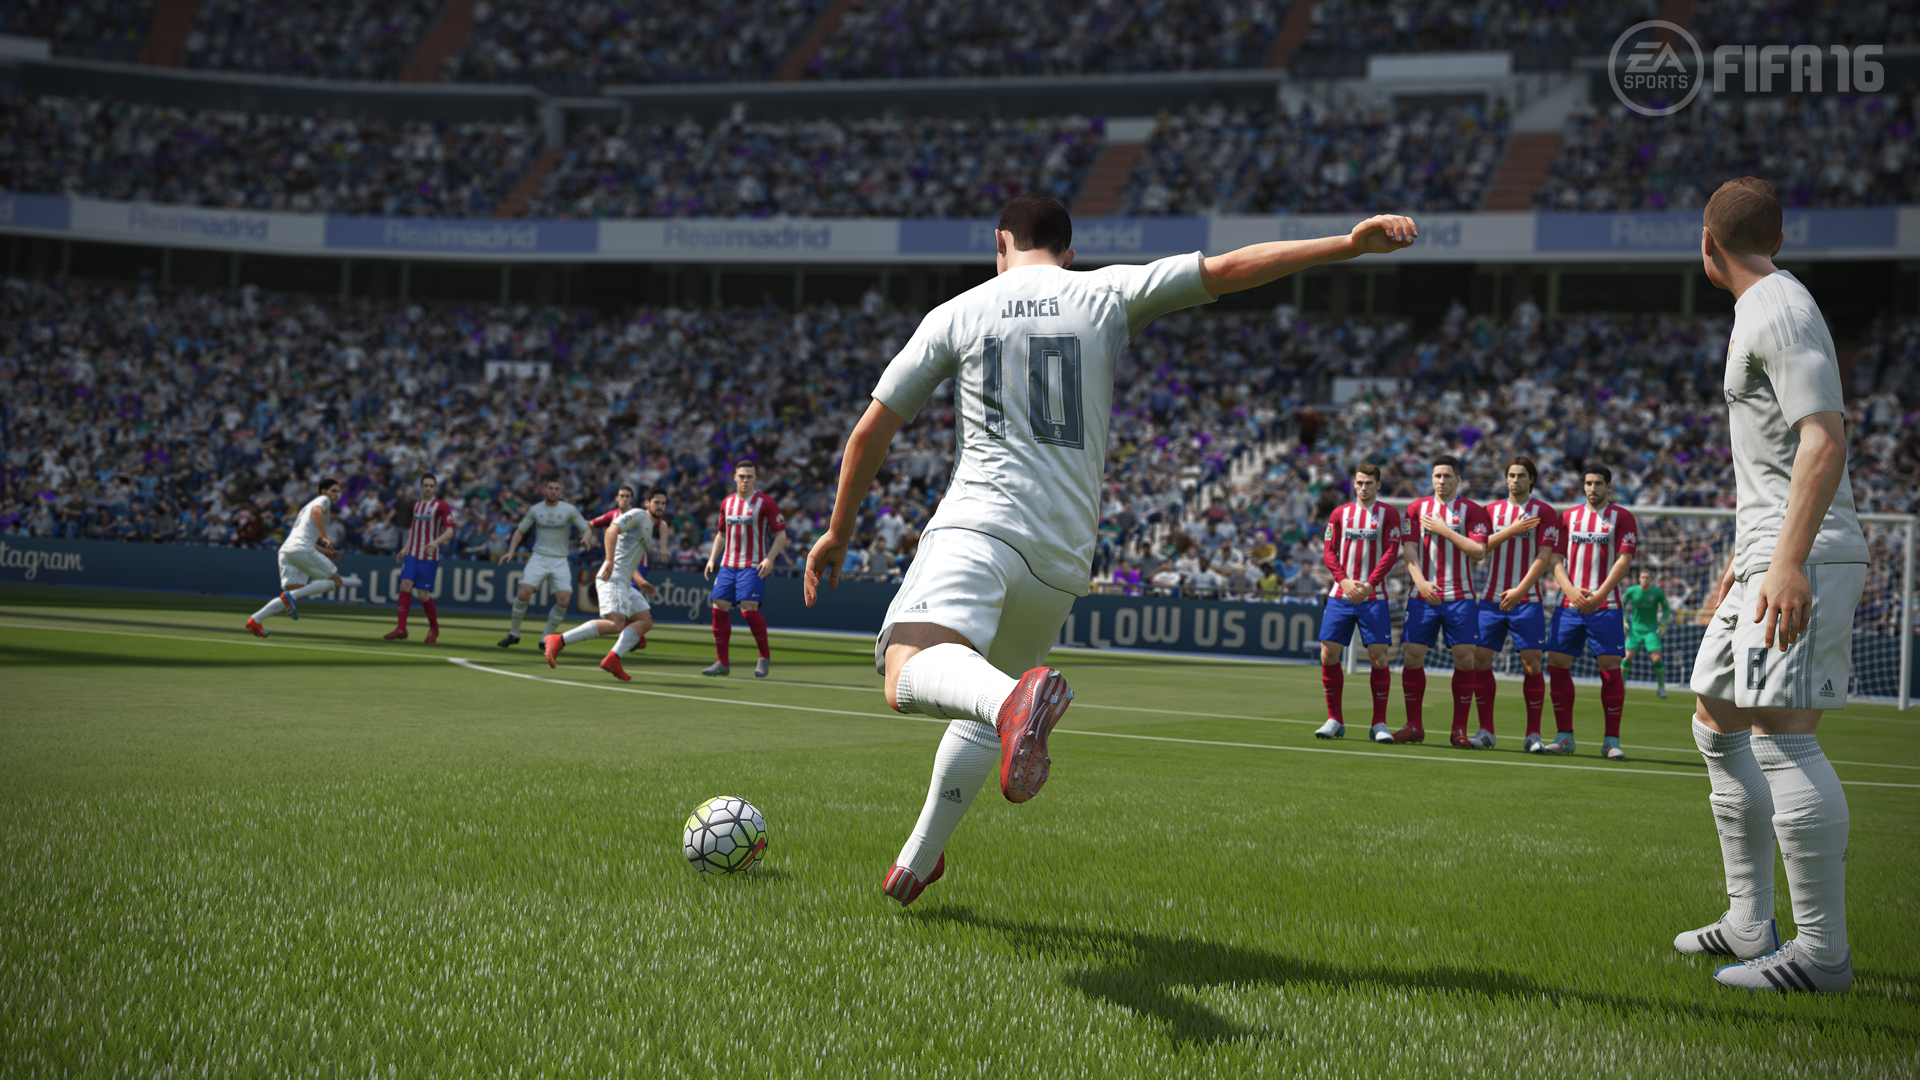 6. FIFA 16